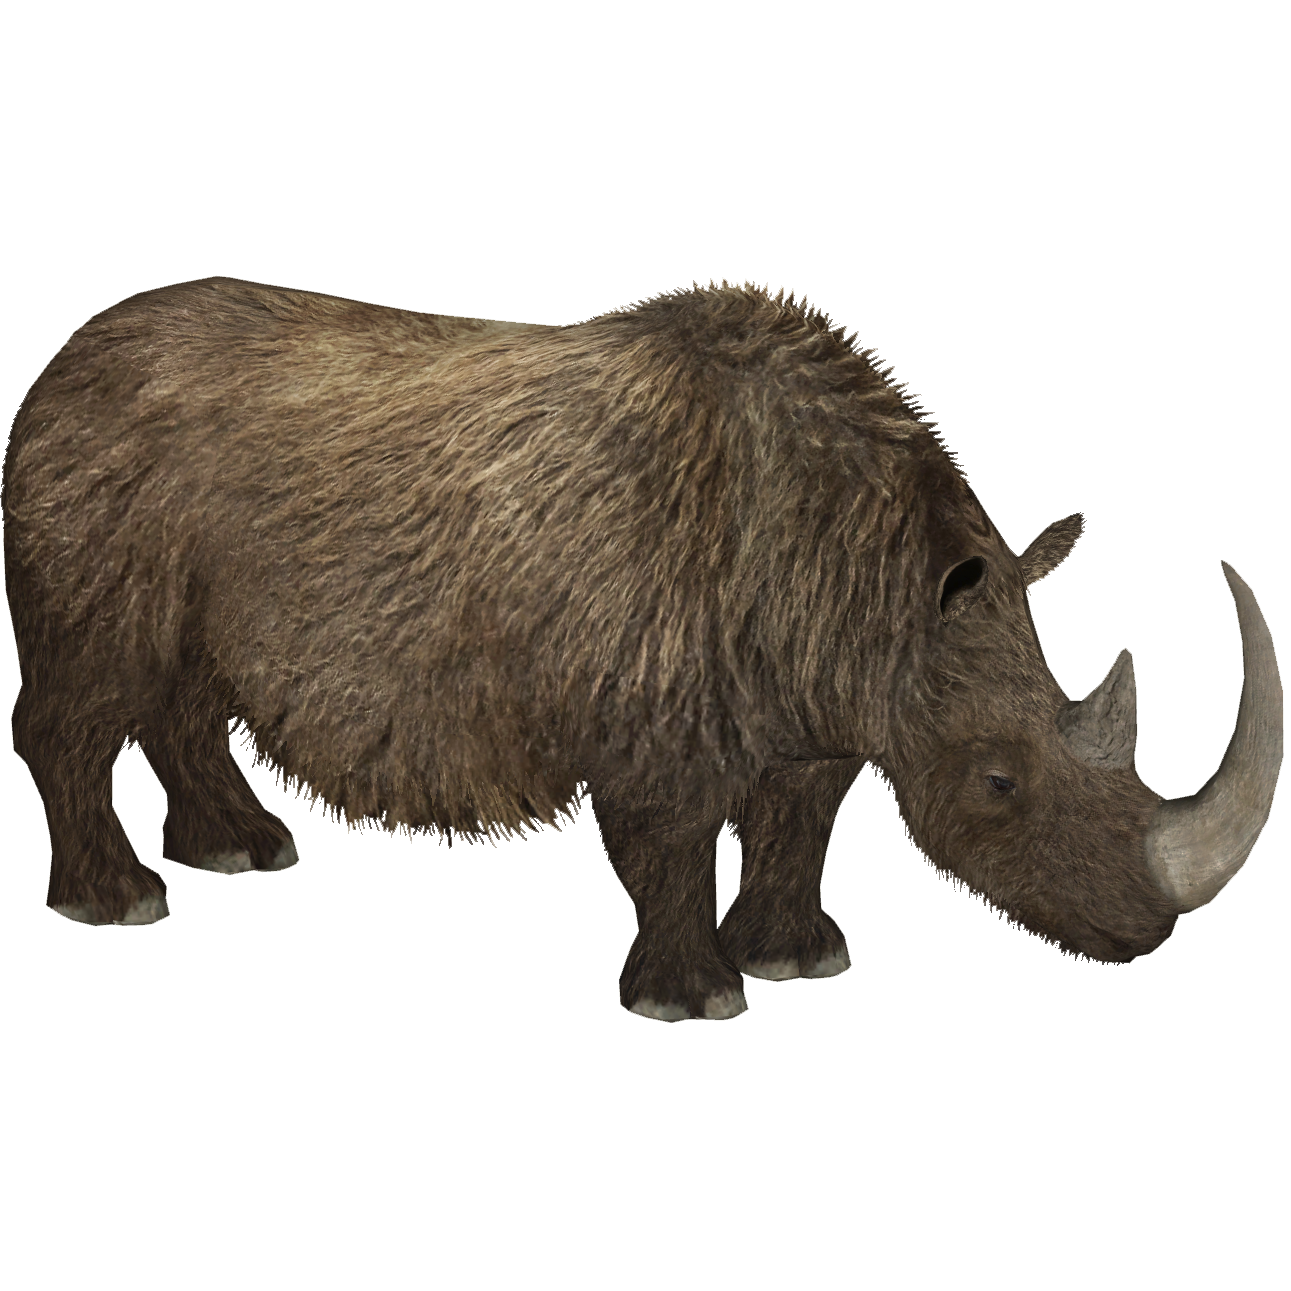 woolly rhinoceros